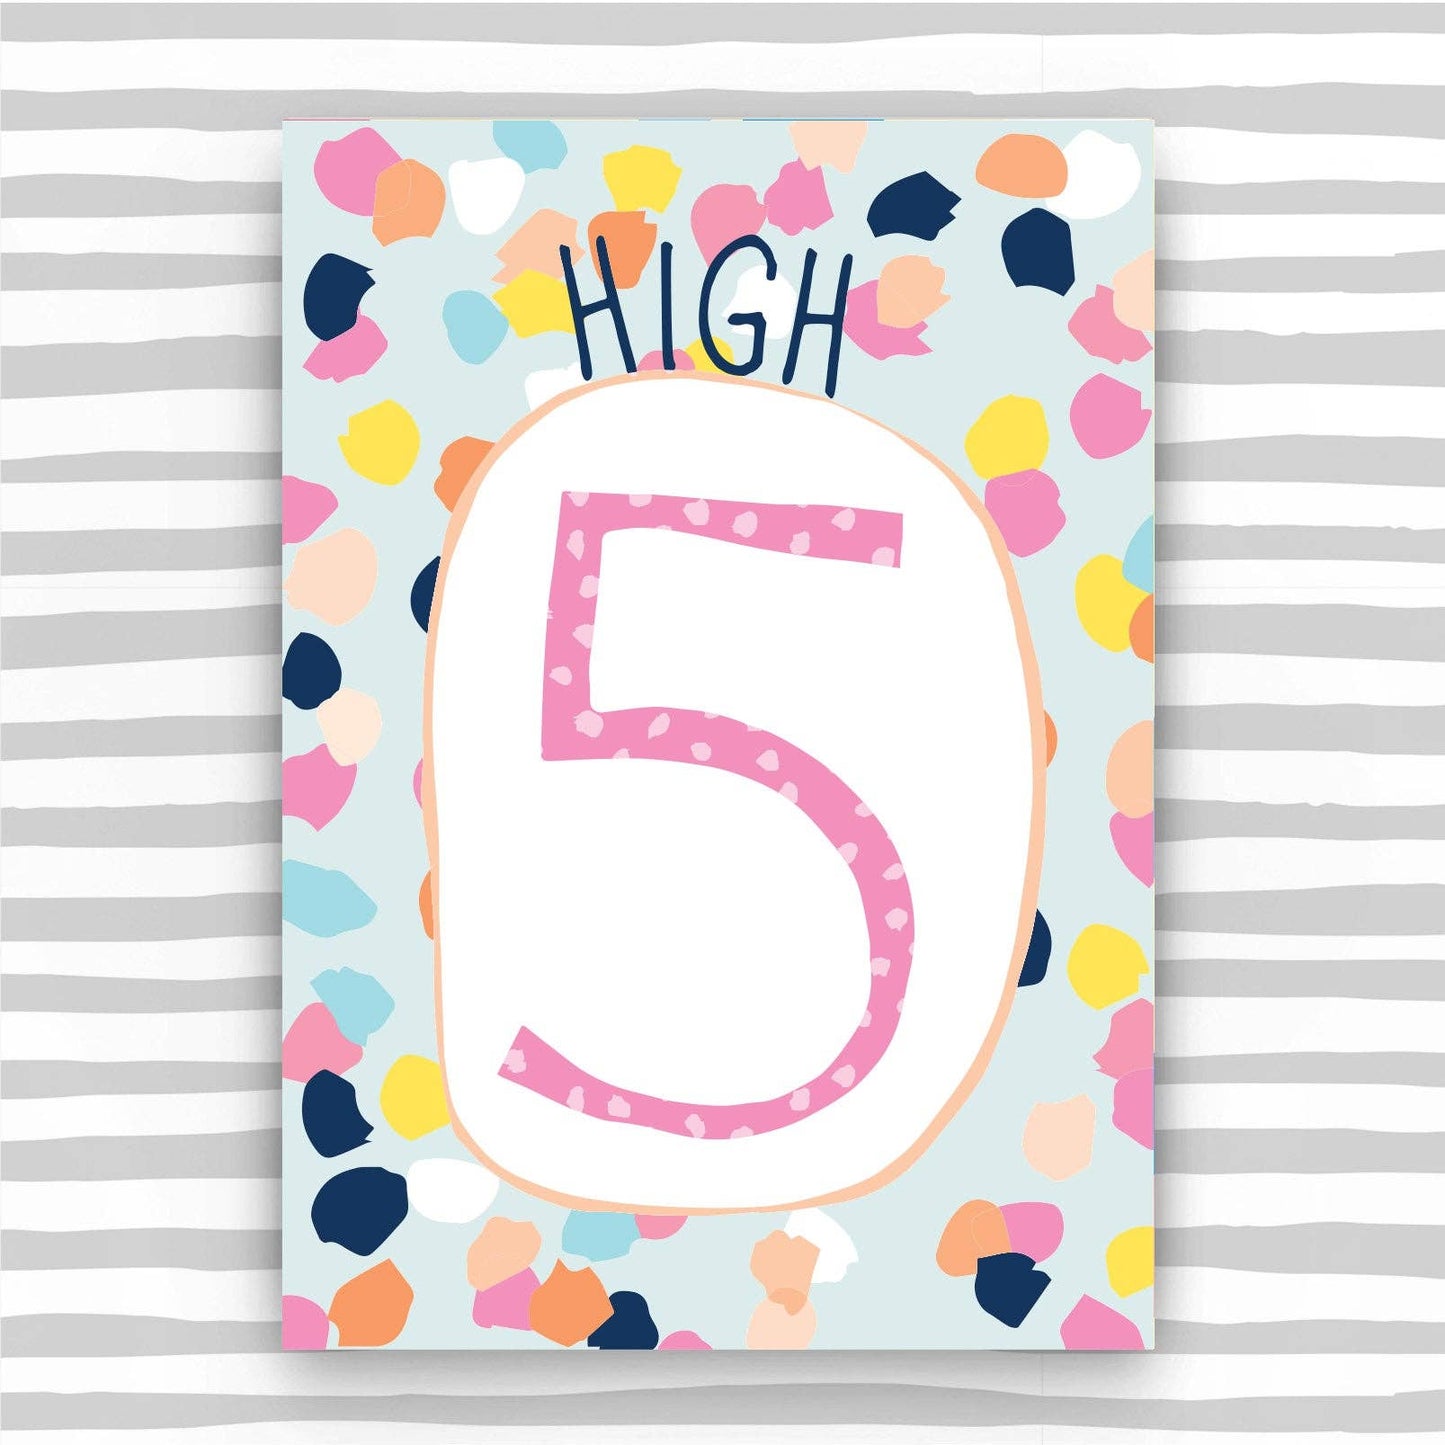 5th Birthday Card for a Girl - Age 5 birthday card female